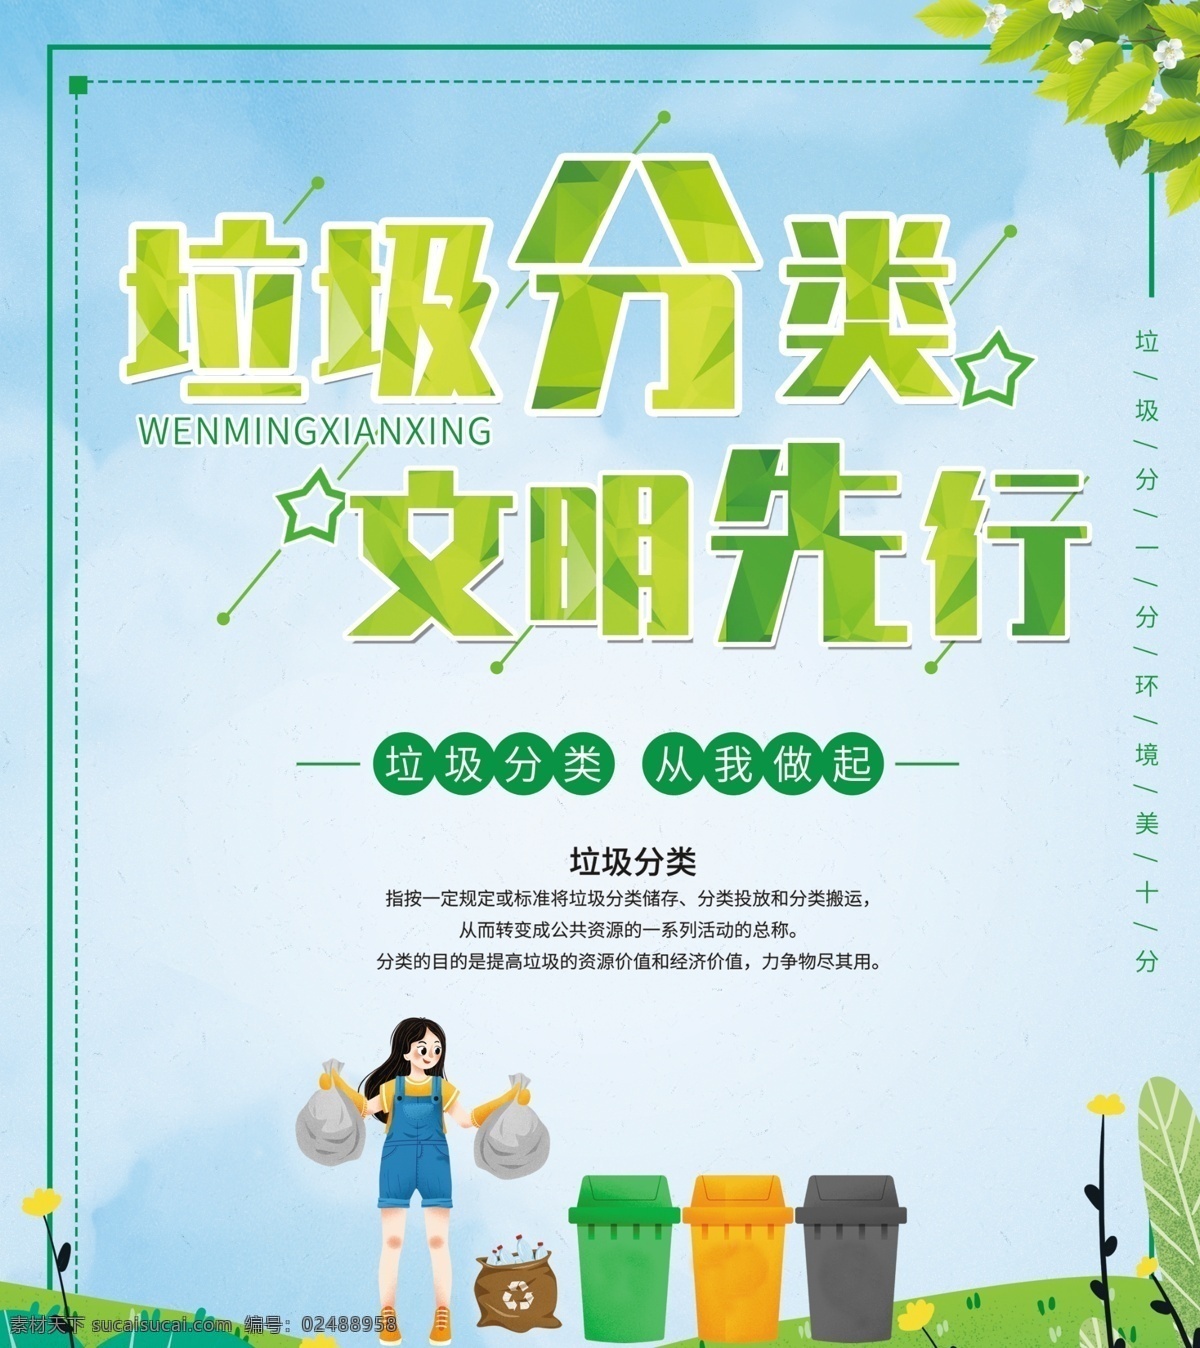 垃圾 分类 文明 先行 海报 展板 垃圾分类 文明先行 绿色垃圾桶 橙色垃圾桶 灰色垃圾桶 手拎垃圾